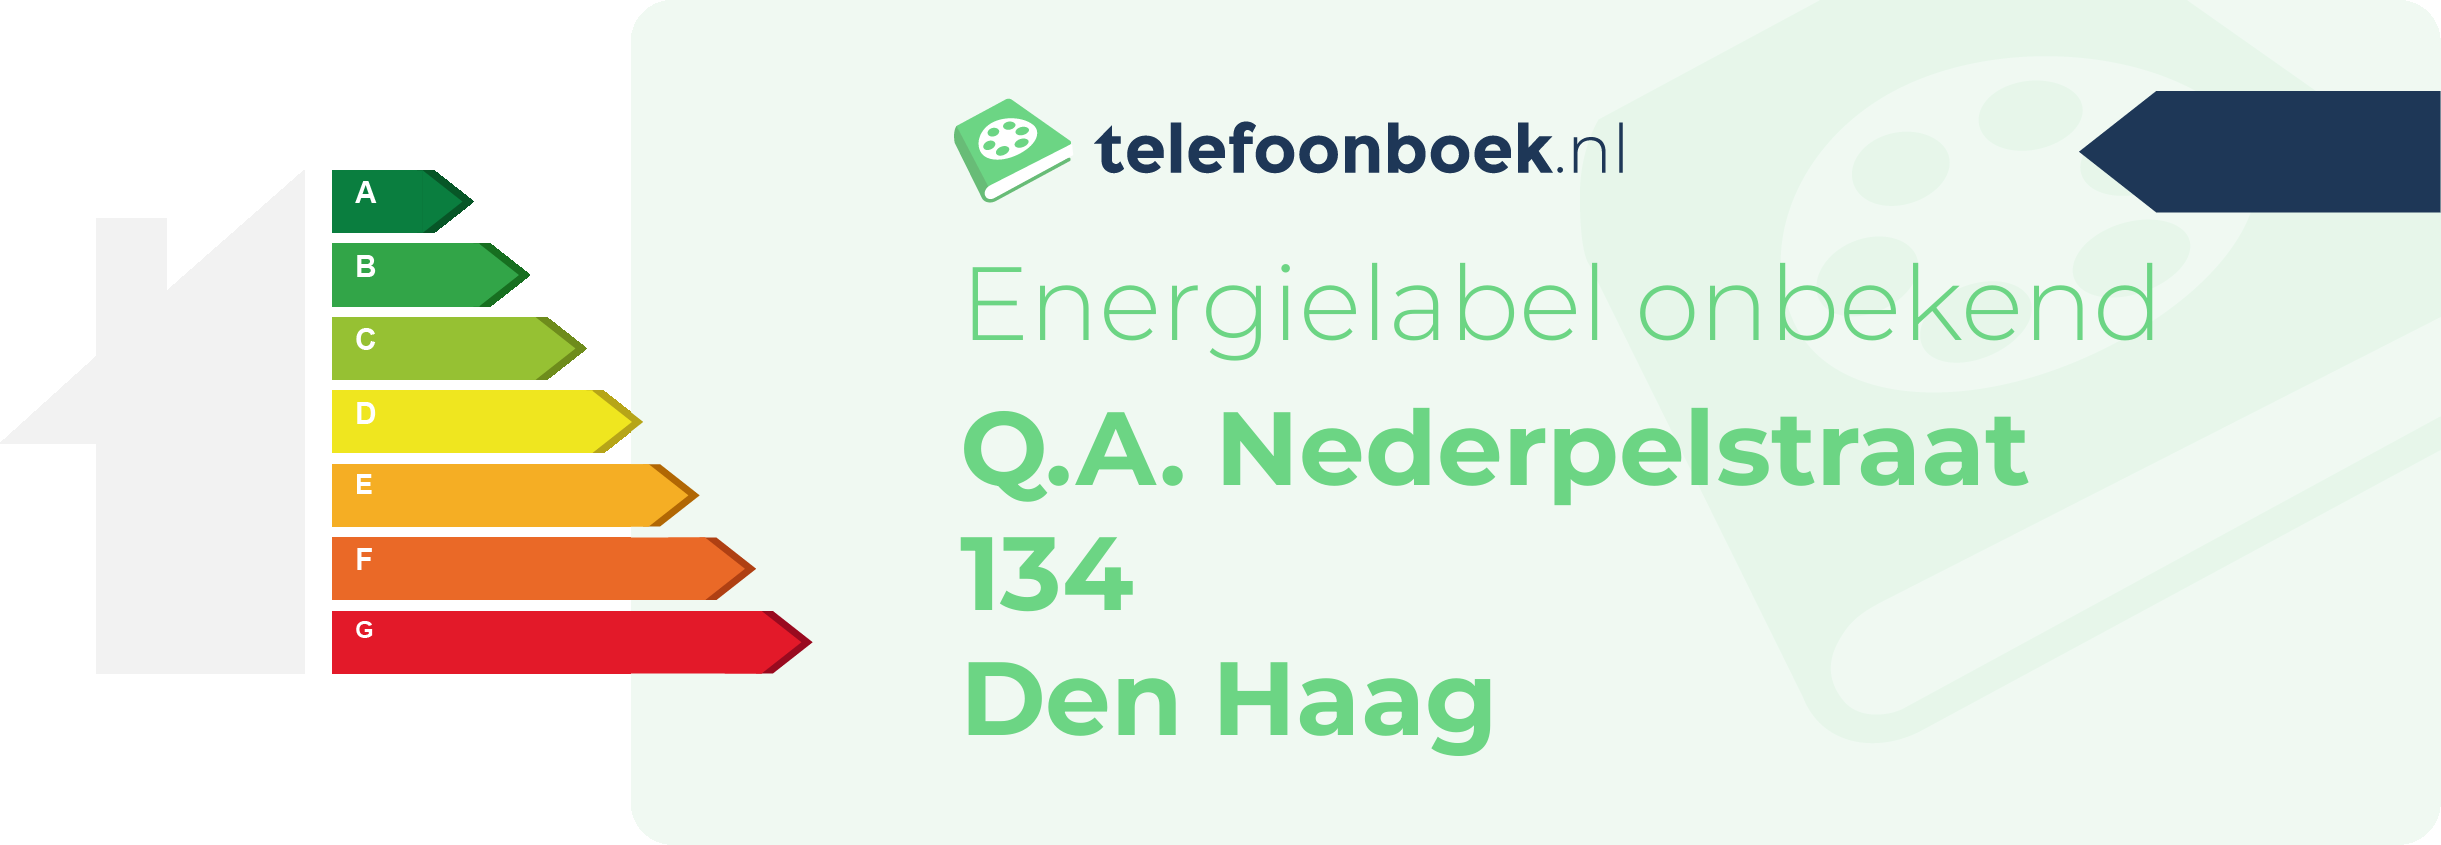 Energielabel Q.A. Nederpelstraat 134 Den Haag